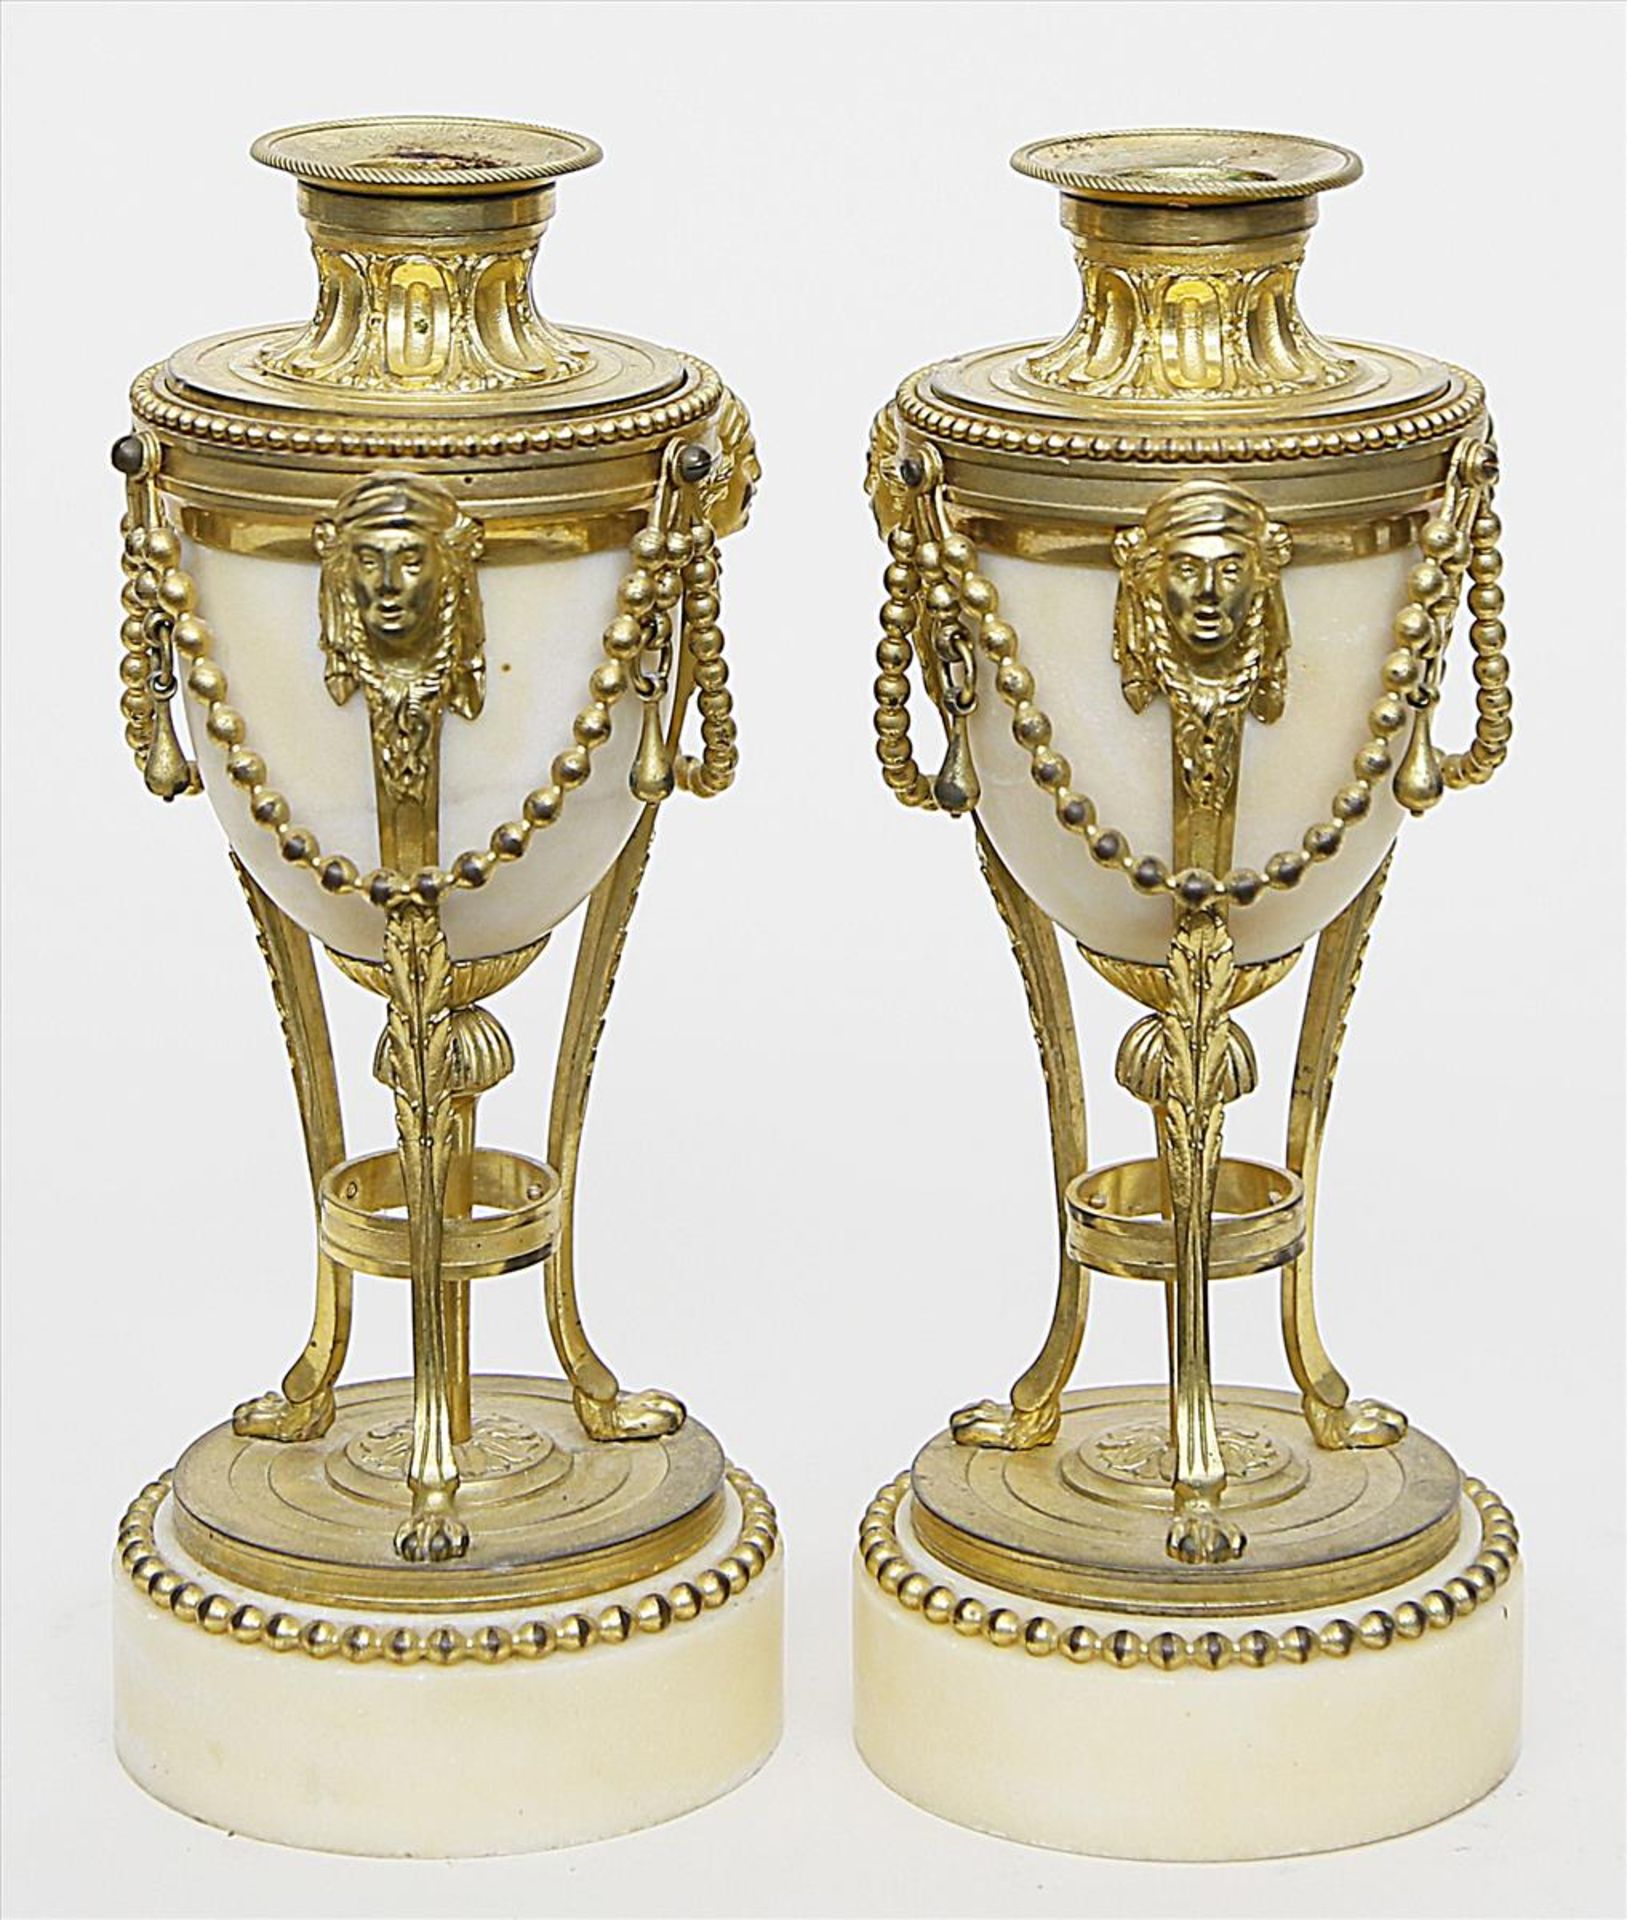 Paar Ziervasen bzw. Leuchter im Stil Louis XVI. - Bild 2 aus 2